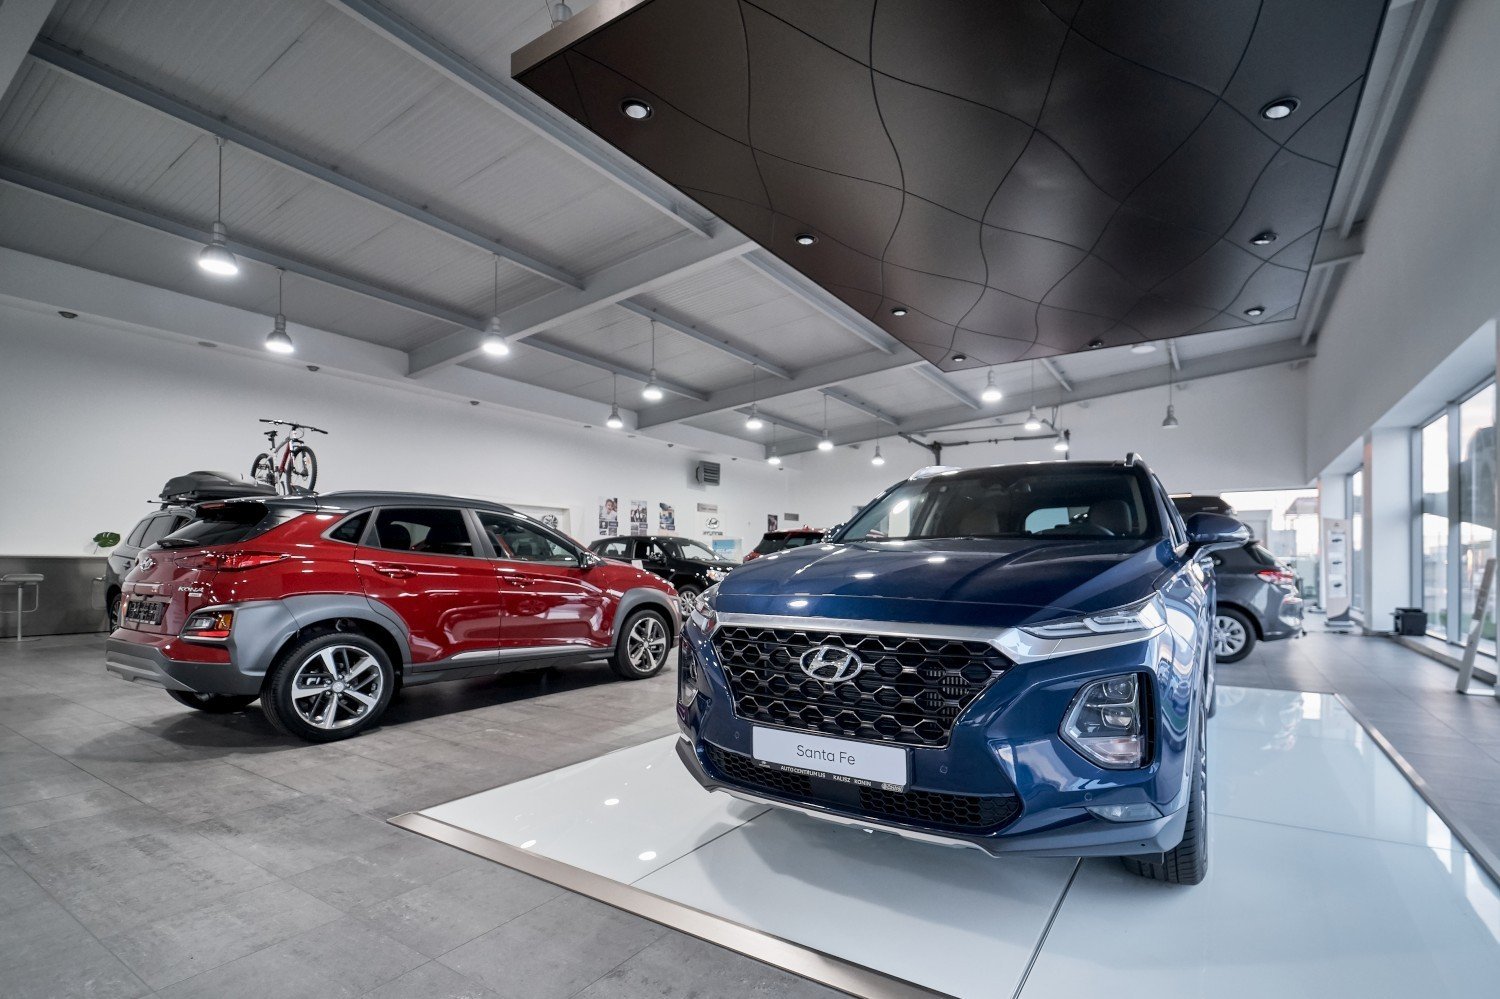 Salon samochodów używanych Hyundai Kalisz. Sprawdzone auta